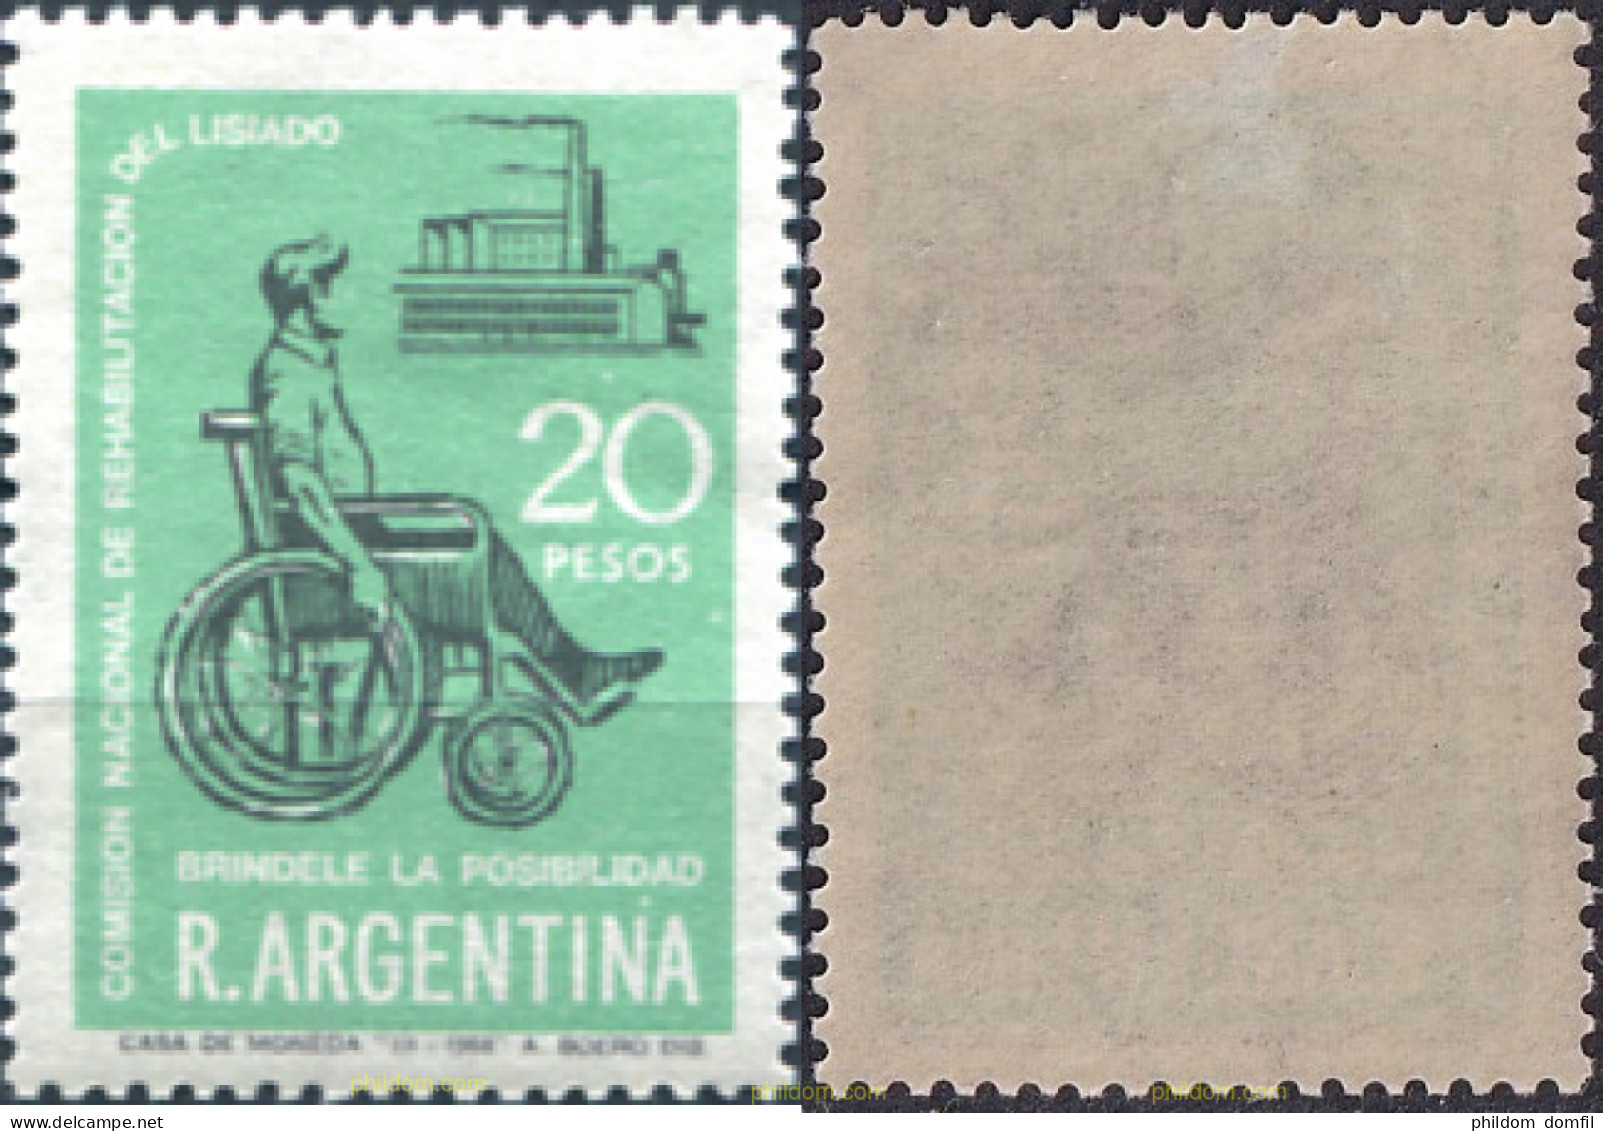 727201 MNH ARGENTINA 1968 COMISION NACIONAL DE REHABILITACION DEL LISIADO - Unused Stamps